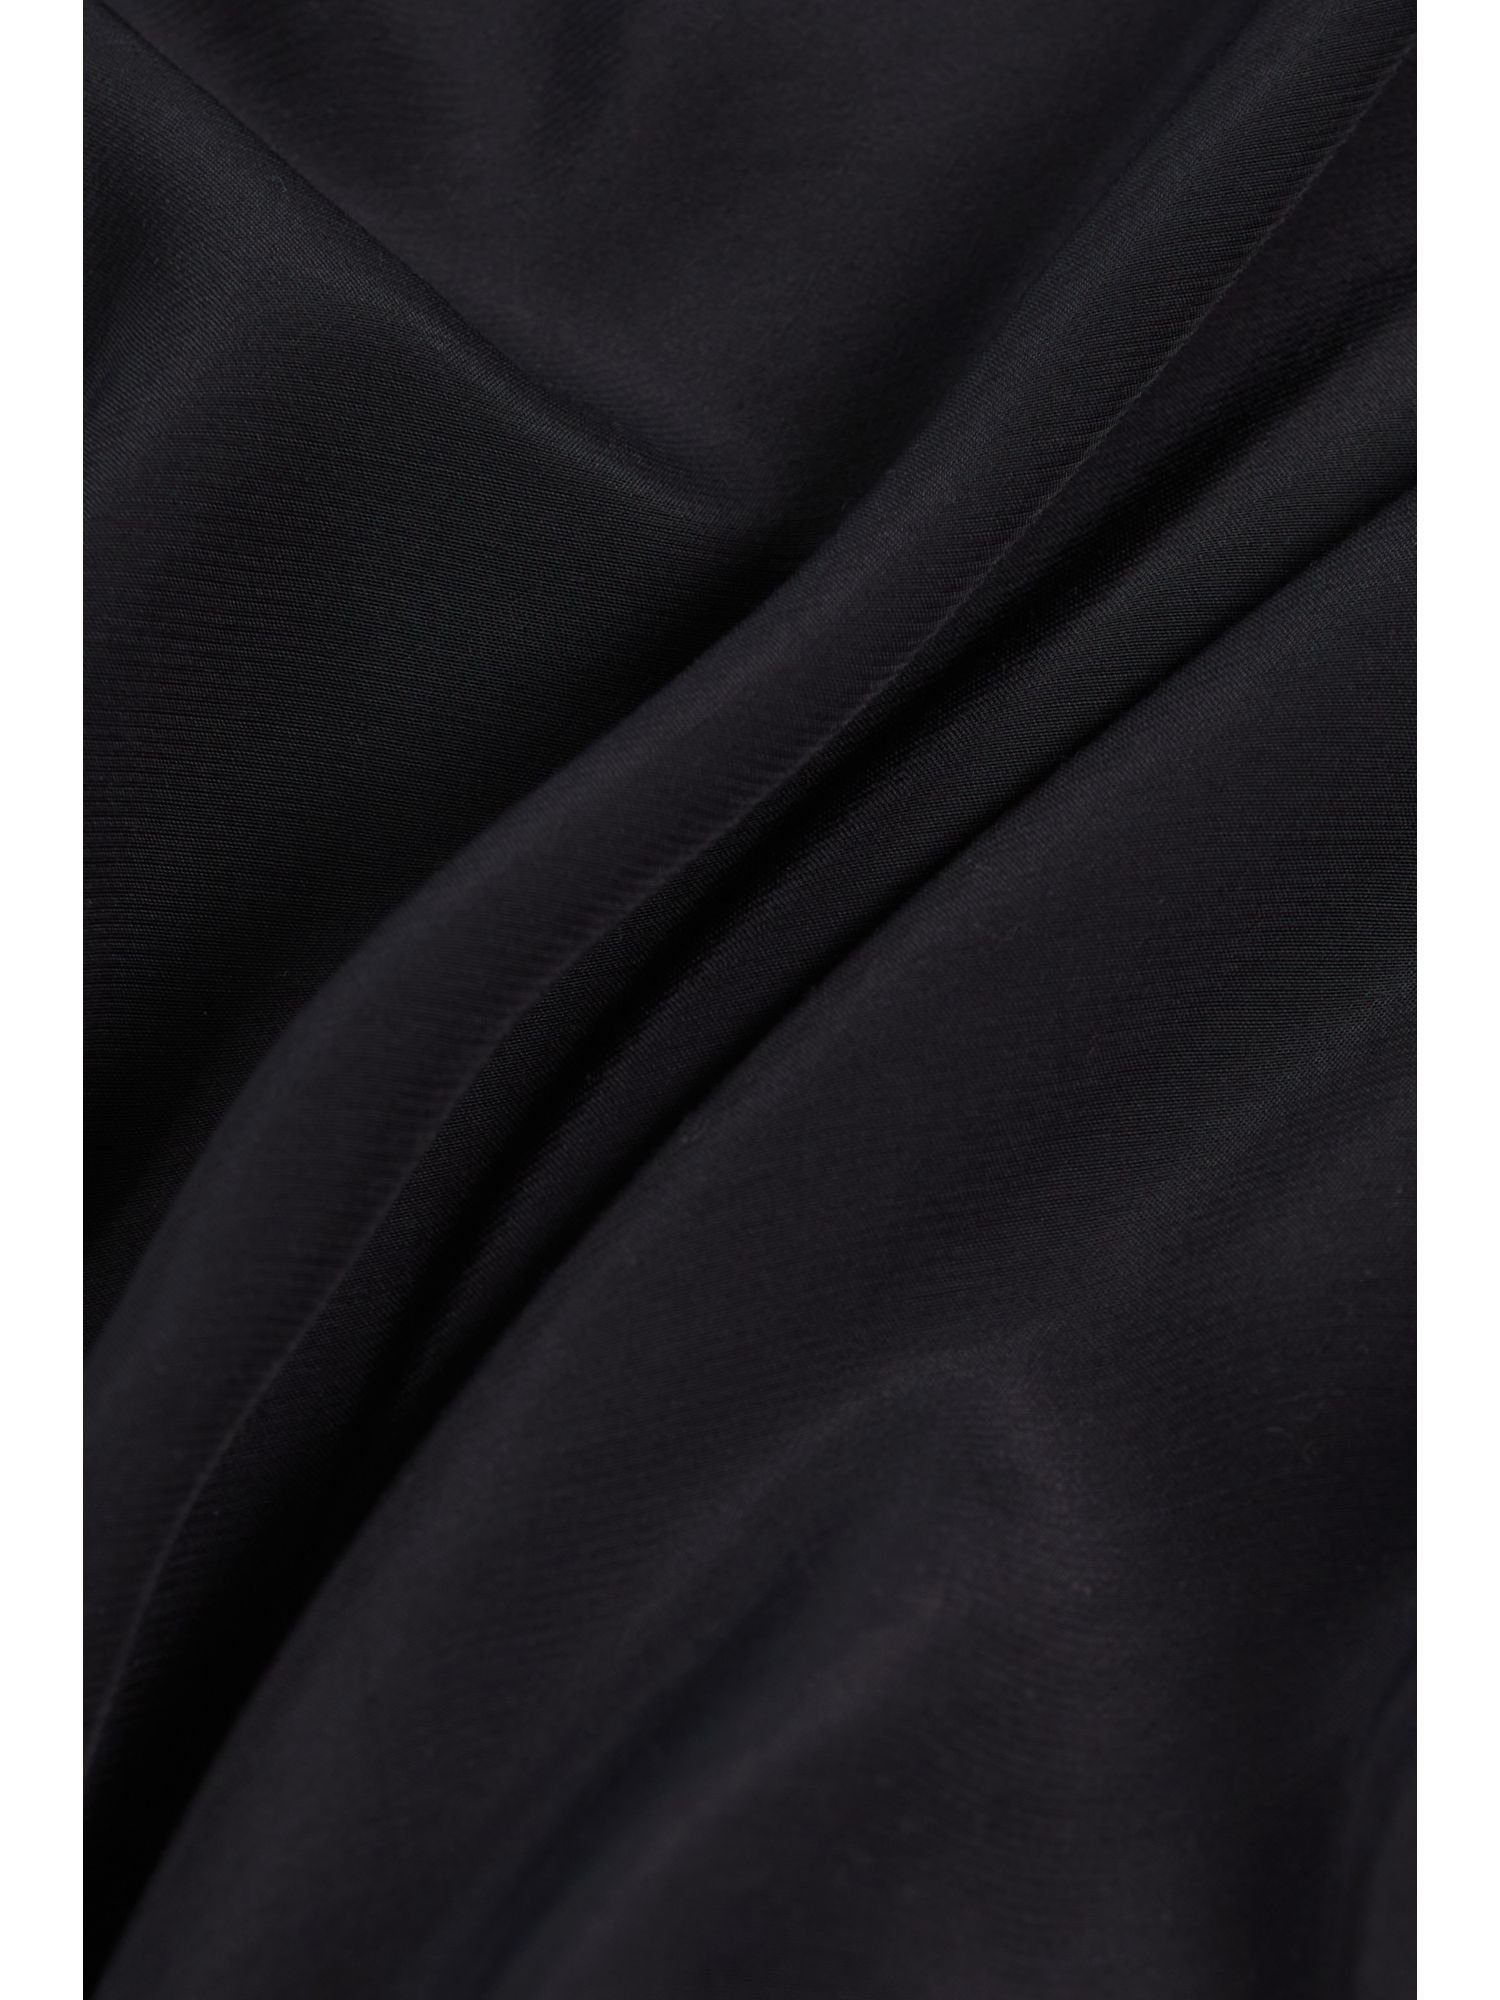 Camisole BLACK Esprit Spitze Blusentop mit